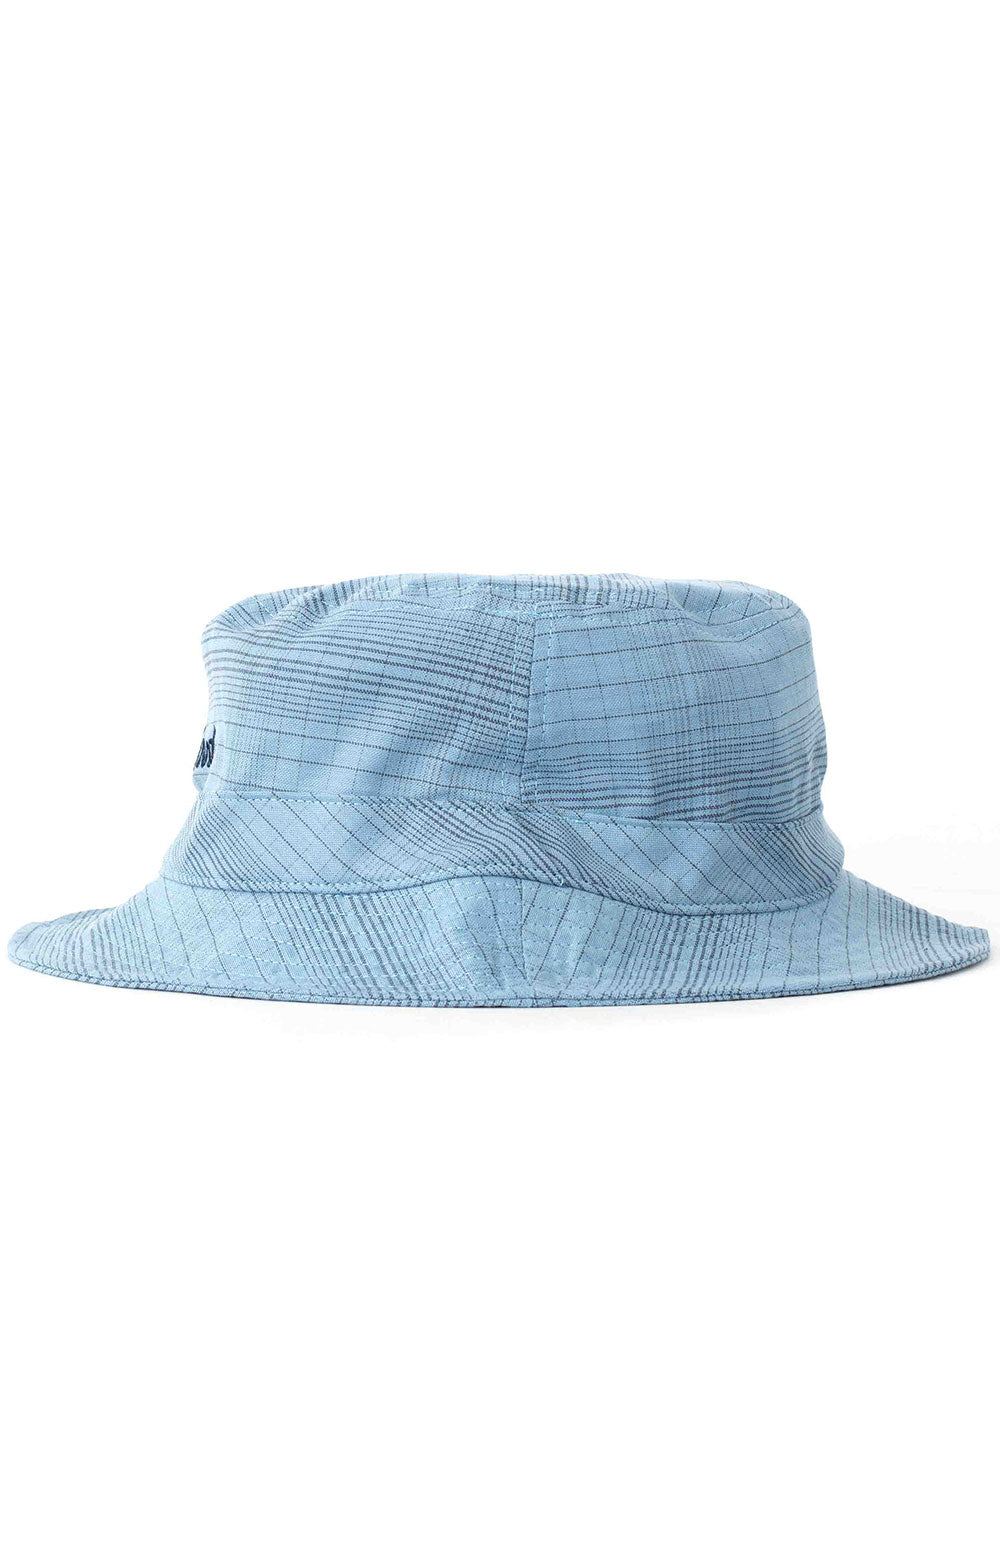 Sprint Packable Bucket Hat - Casa Blanca Blue